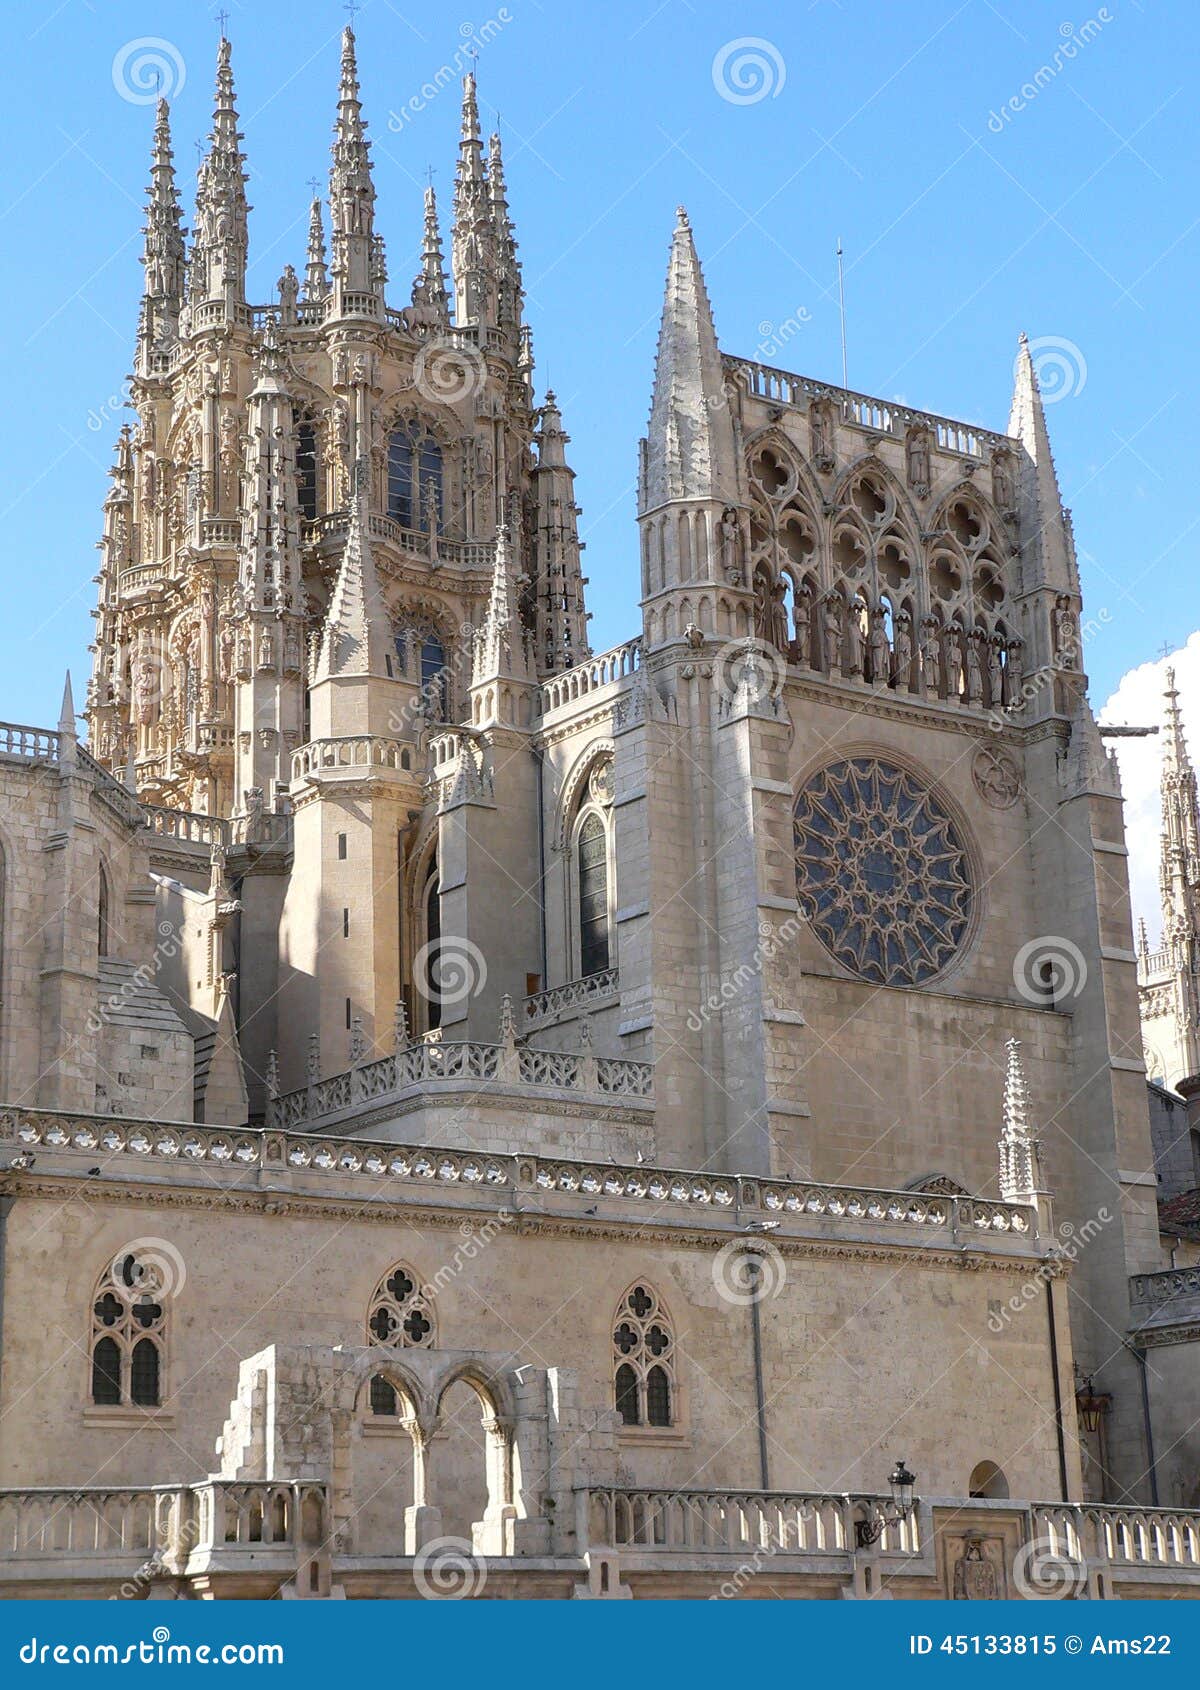 Catedral de Santa Maria, Burgos (Spanien). Södra sikt av den gotiska domkyrkan i Burgos, Spanien Konstruktion på Burgos den gotiska domkyrkan började i 1221 och spände över främst mellan de 13th och 15th århundradena